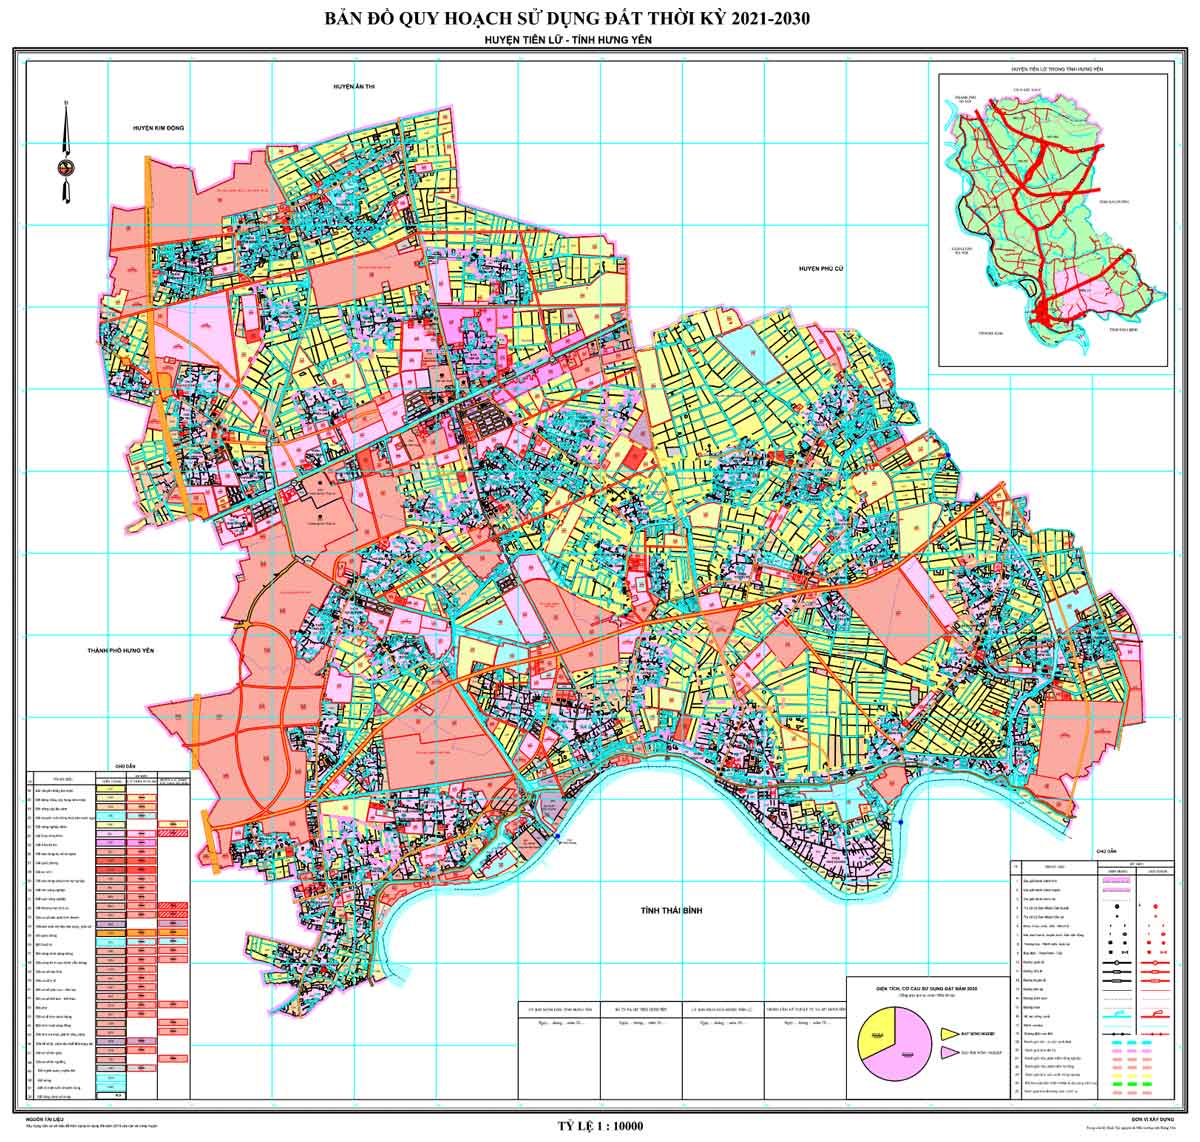 Bản đồ QHSDĐ huyện Tiên Lữ đến năm 2030